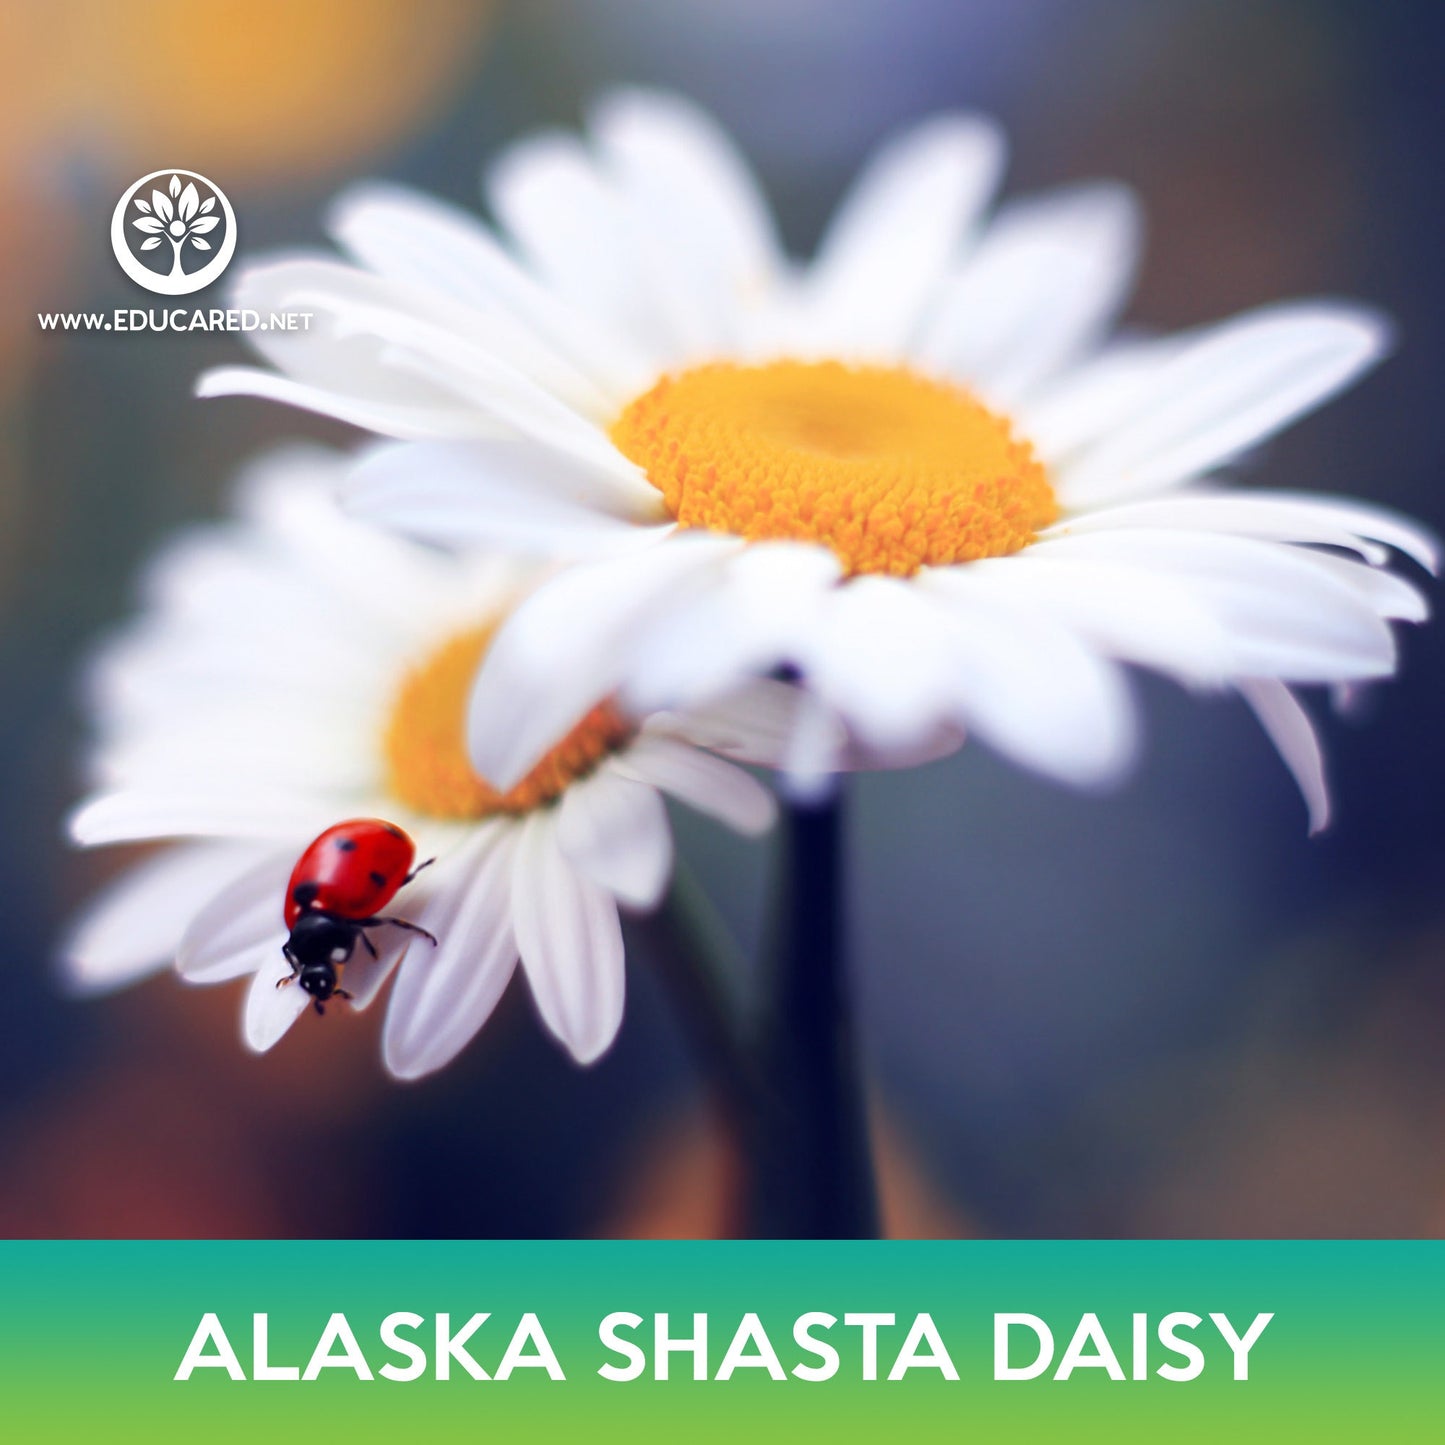 Alaska Shasta Daisy Flower Seeds